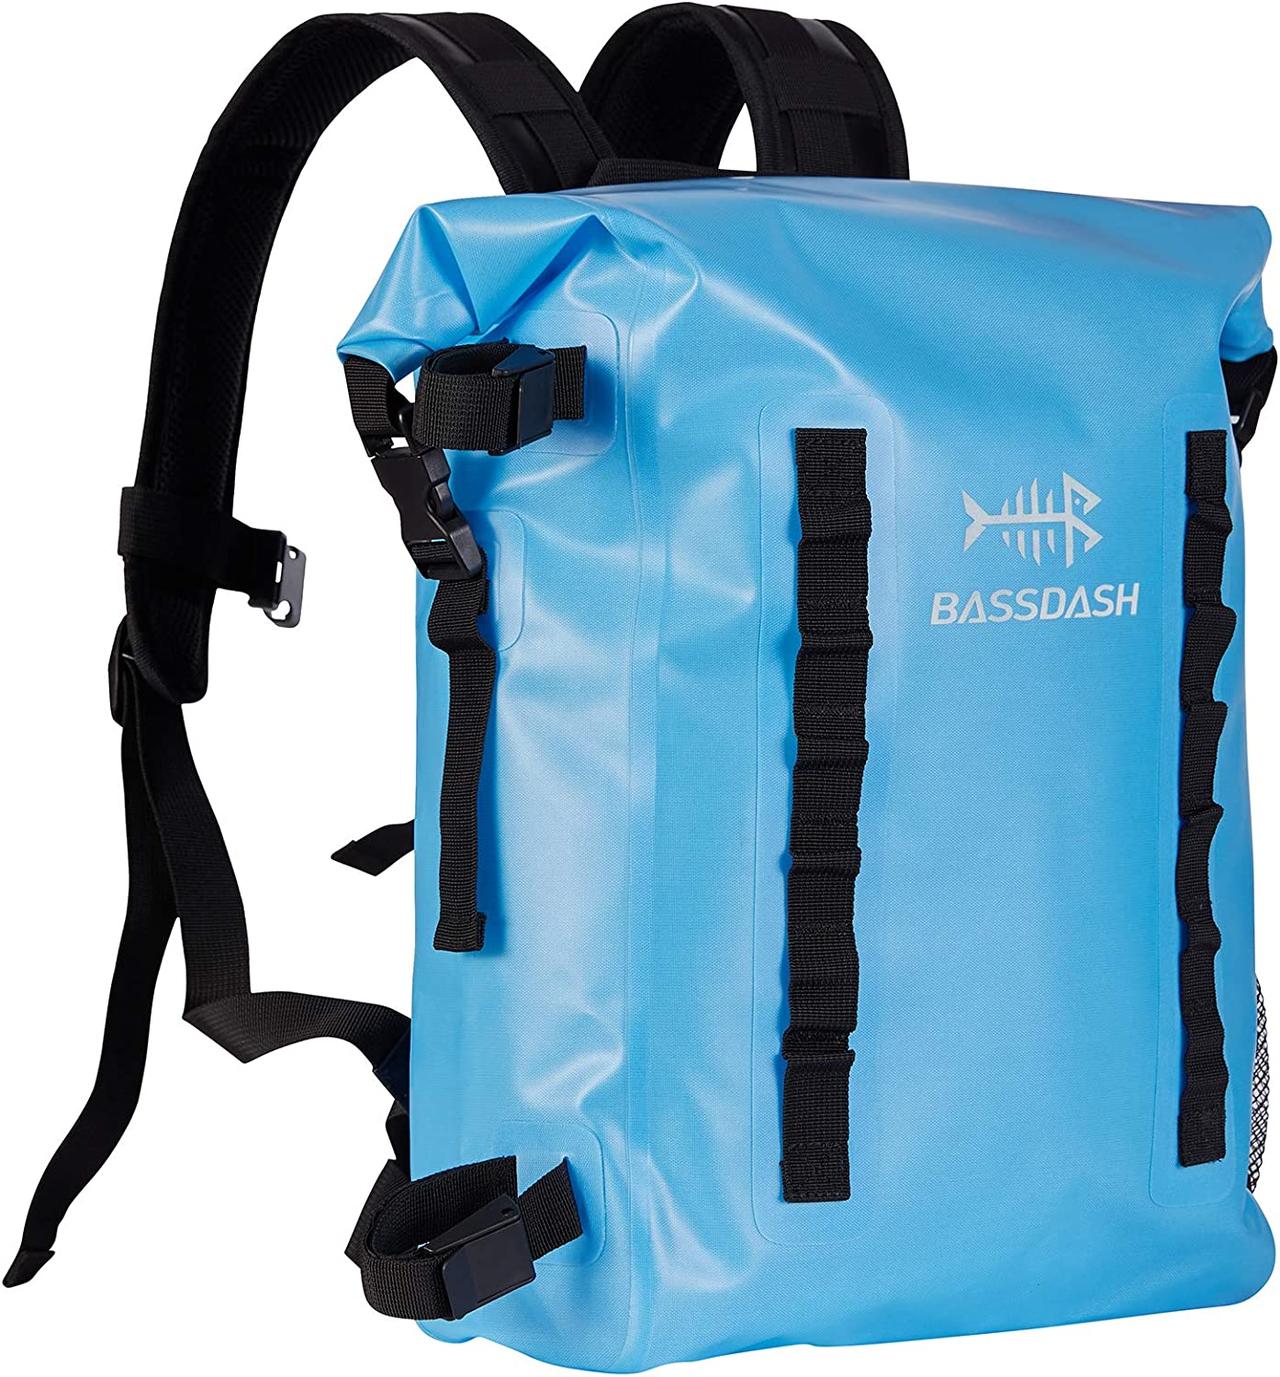 BASSDASH TPU Backpack - Best Waterproof Dry Bag